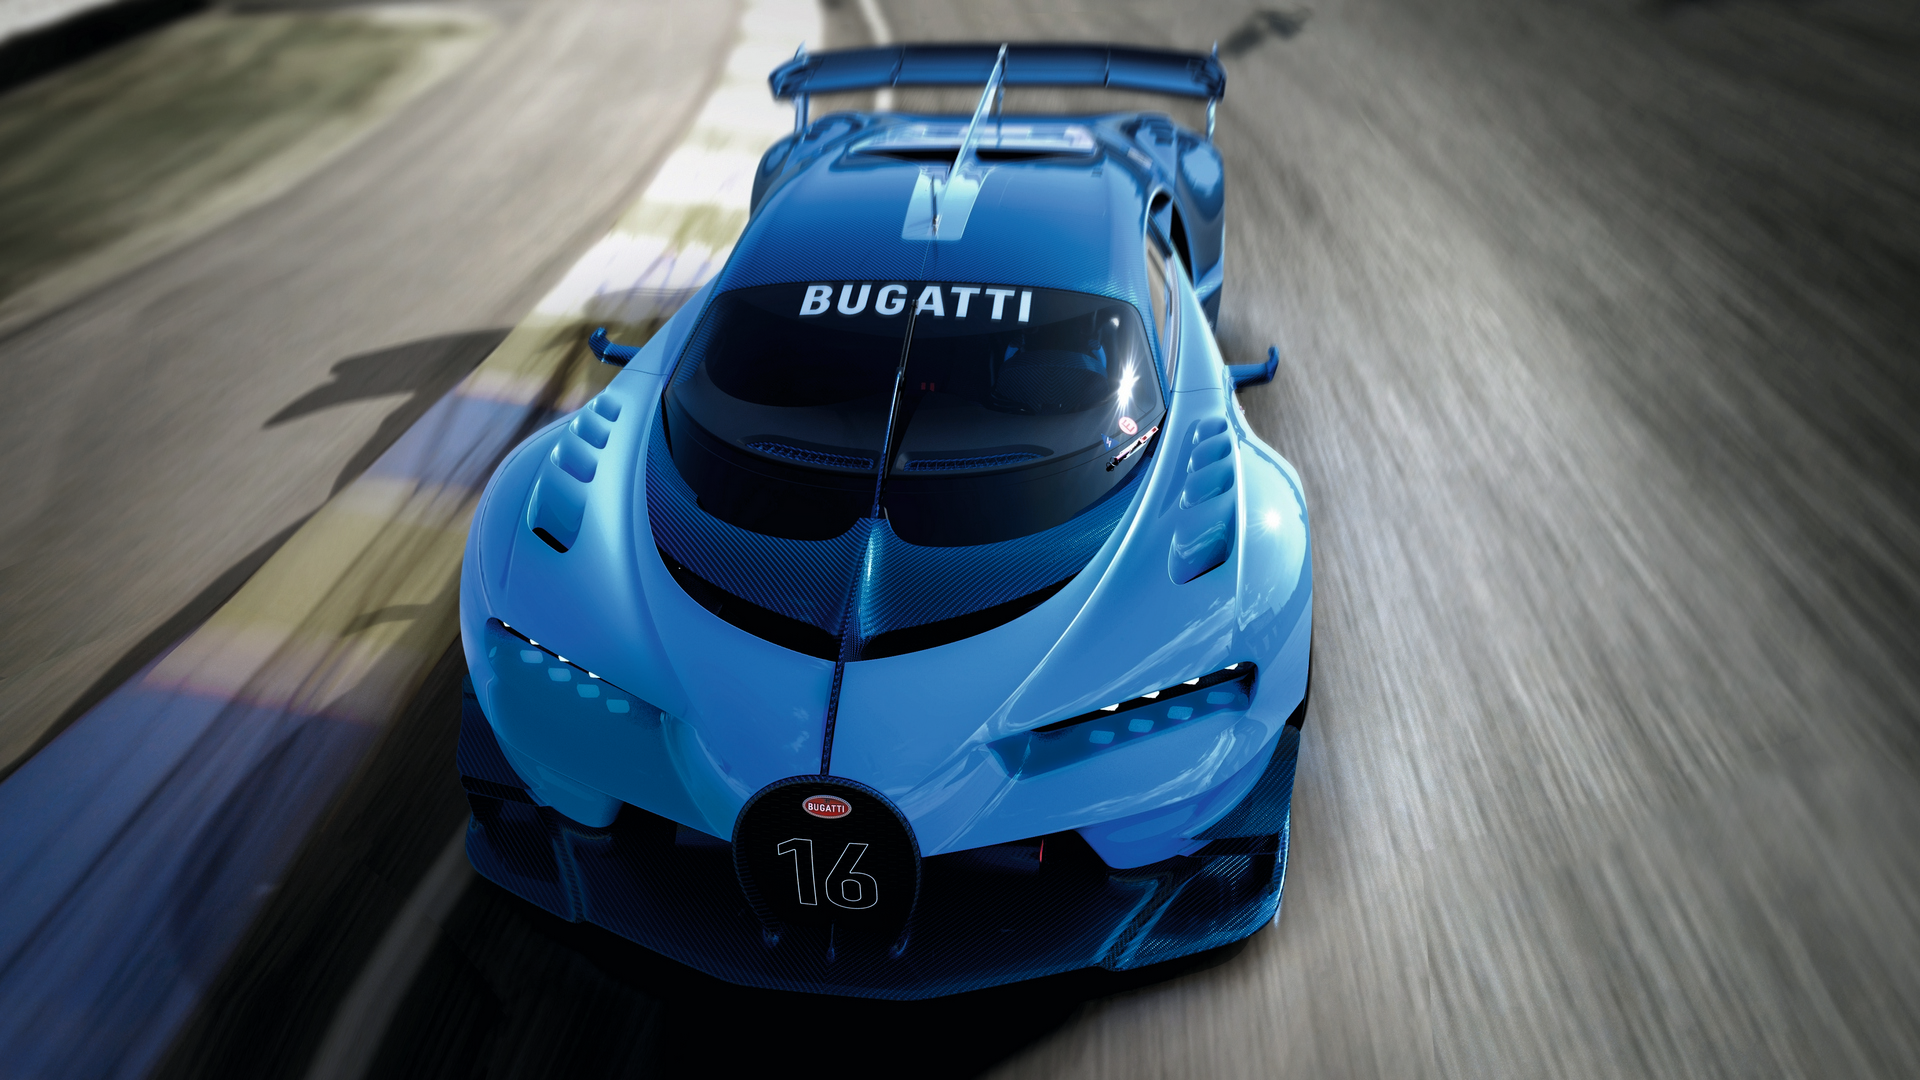 is the bugatti the fastest car